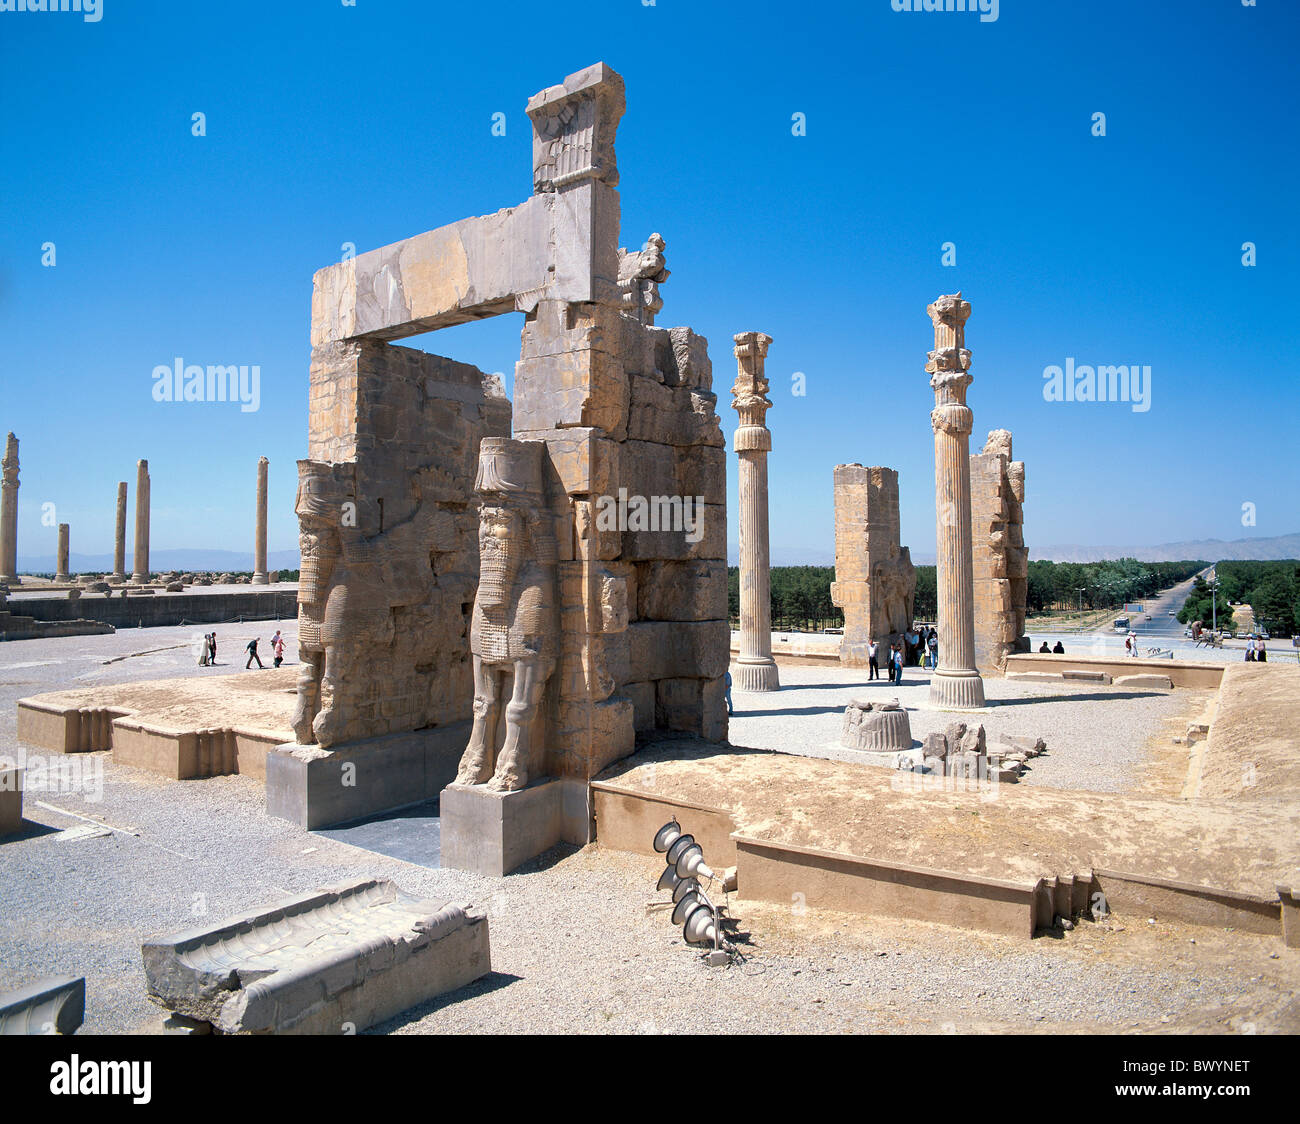 L'Iran Moyen-orient culture Persépolis sculptures colonnes Takht e Jamshid taureaux en pierre ancienne porte de Xerxès worl Banque D'Images